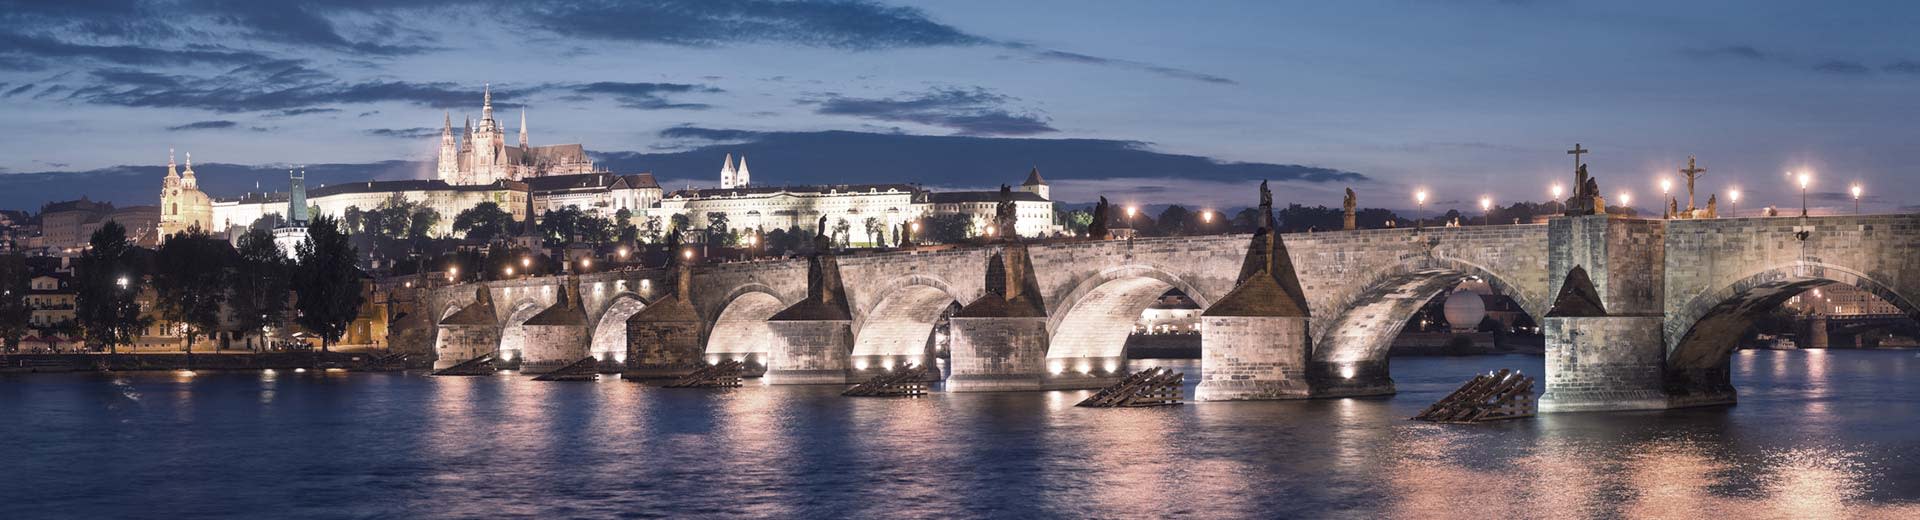 El famoso puente Charles en Praga se ilumina hábilmente bajo un cielo de anochecer o amanecer, con agujas históricas en el fondo.